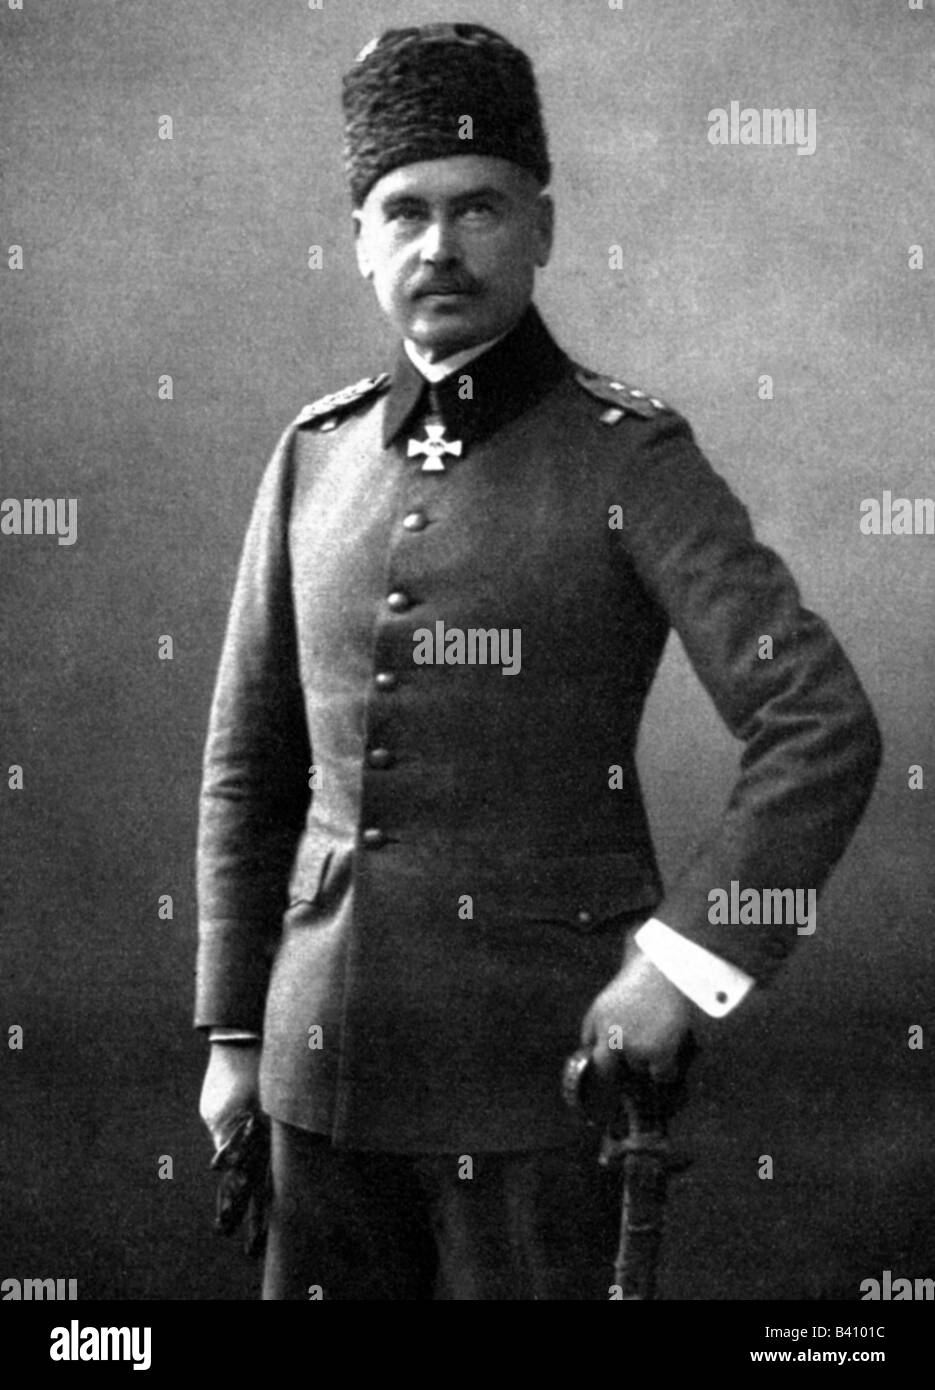 Liman von Sanders, otto, 18.2.1855 - 22.8.1929, generale tedesco, capo dell'esercito tedesco in Turchia 1913 - 1918, mezza lunghezza, foto circa 1915, Foto Stock